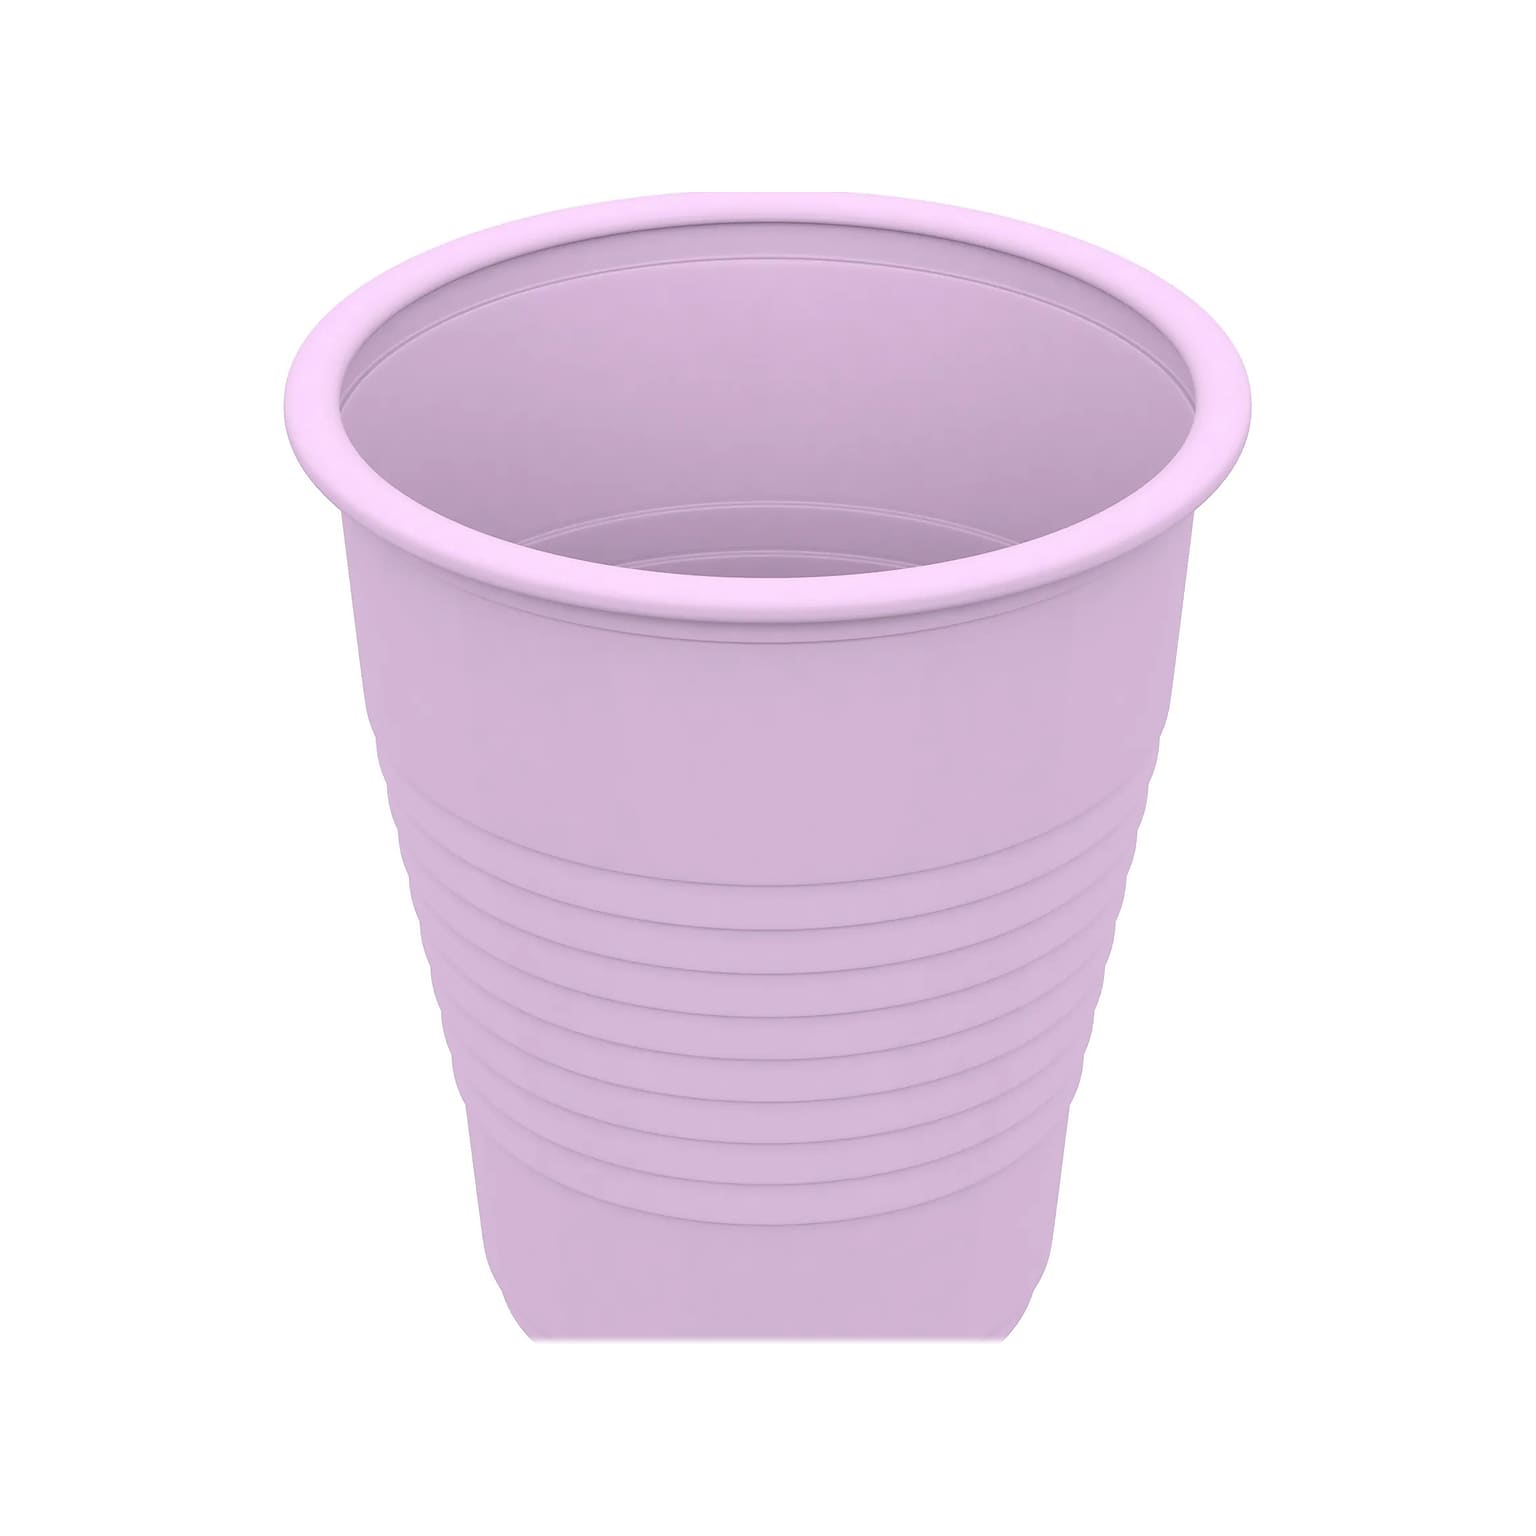 Dynarex 5 oz. Plastic Disposable Cup, Lavender, 50/Pack, 20 Packs/Carton (4240)